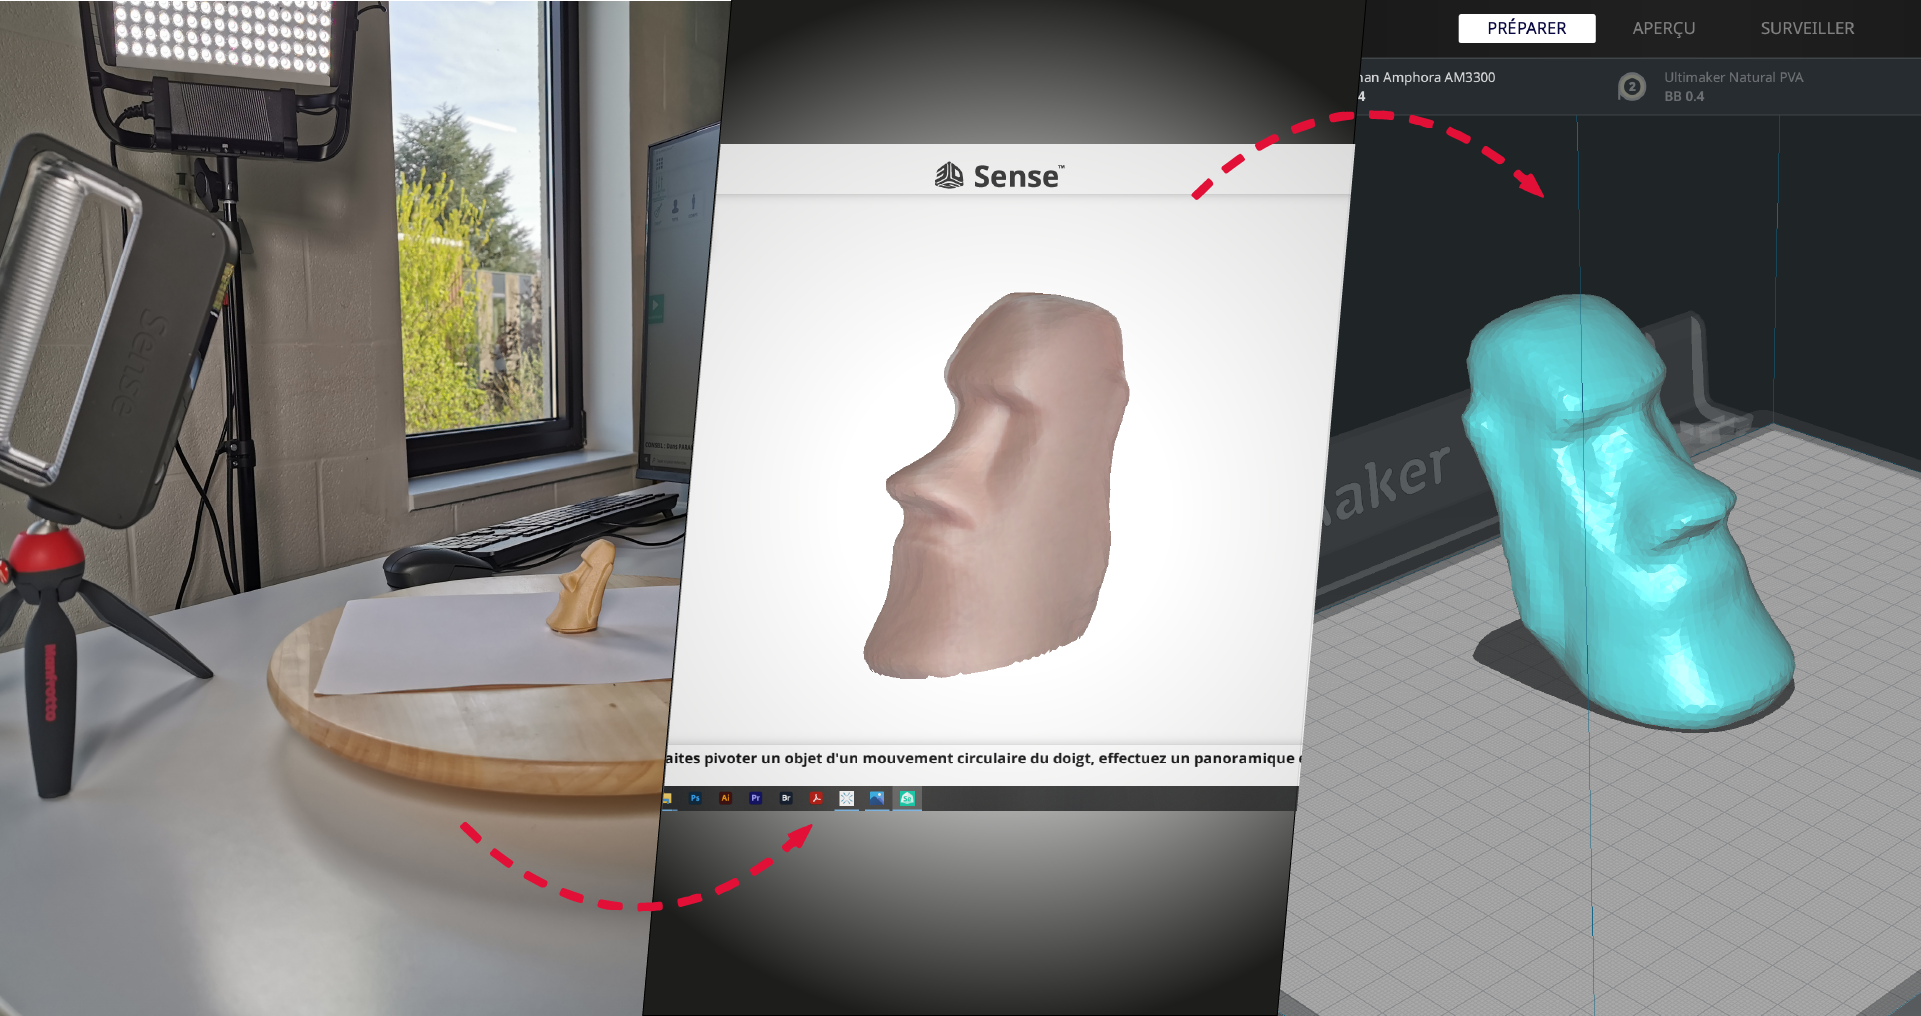 Imprimer en 3D : La nécessité d'un scanner 3D - & une idépendance totale